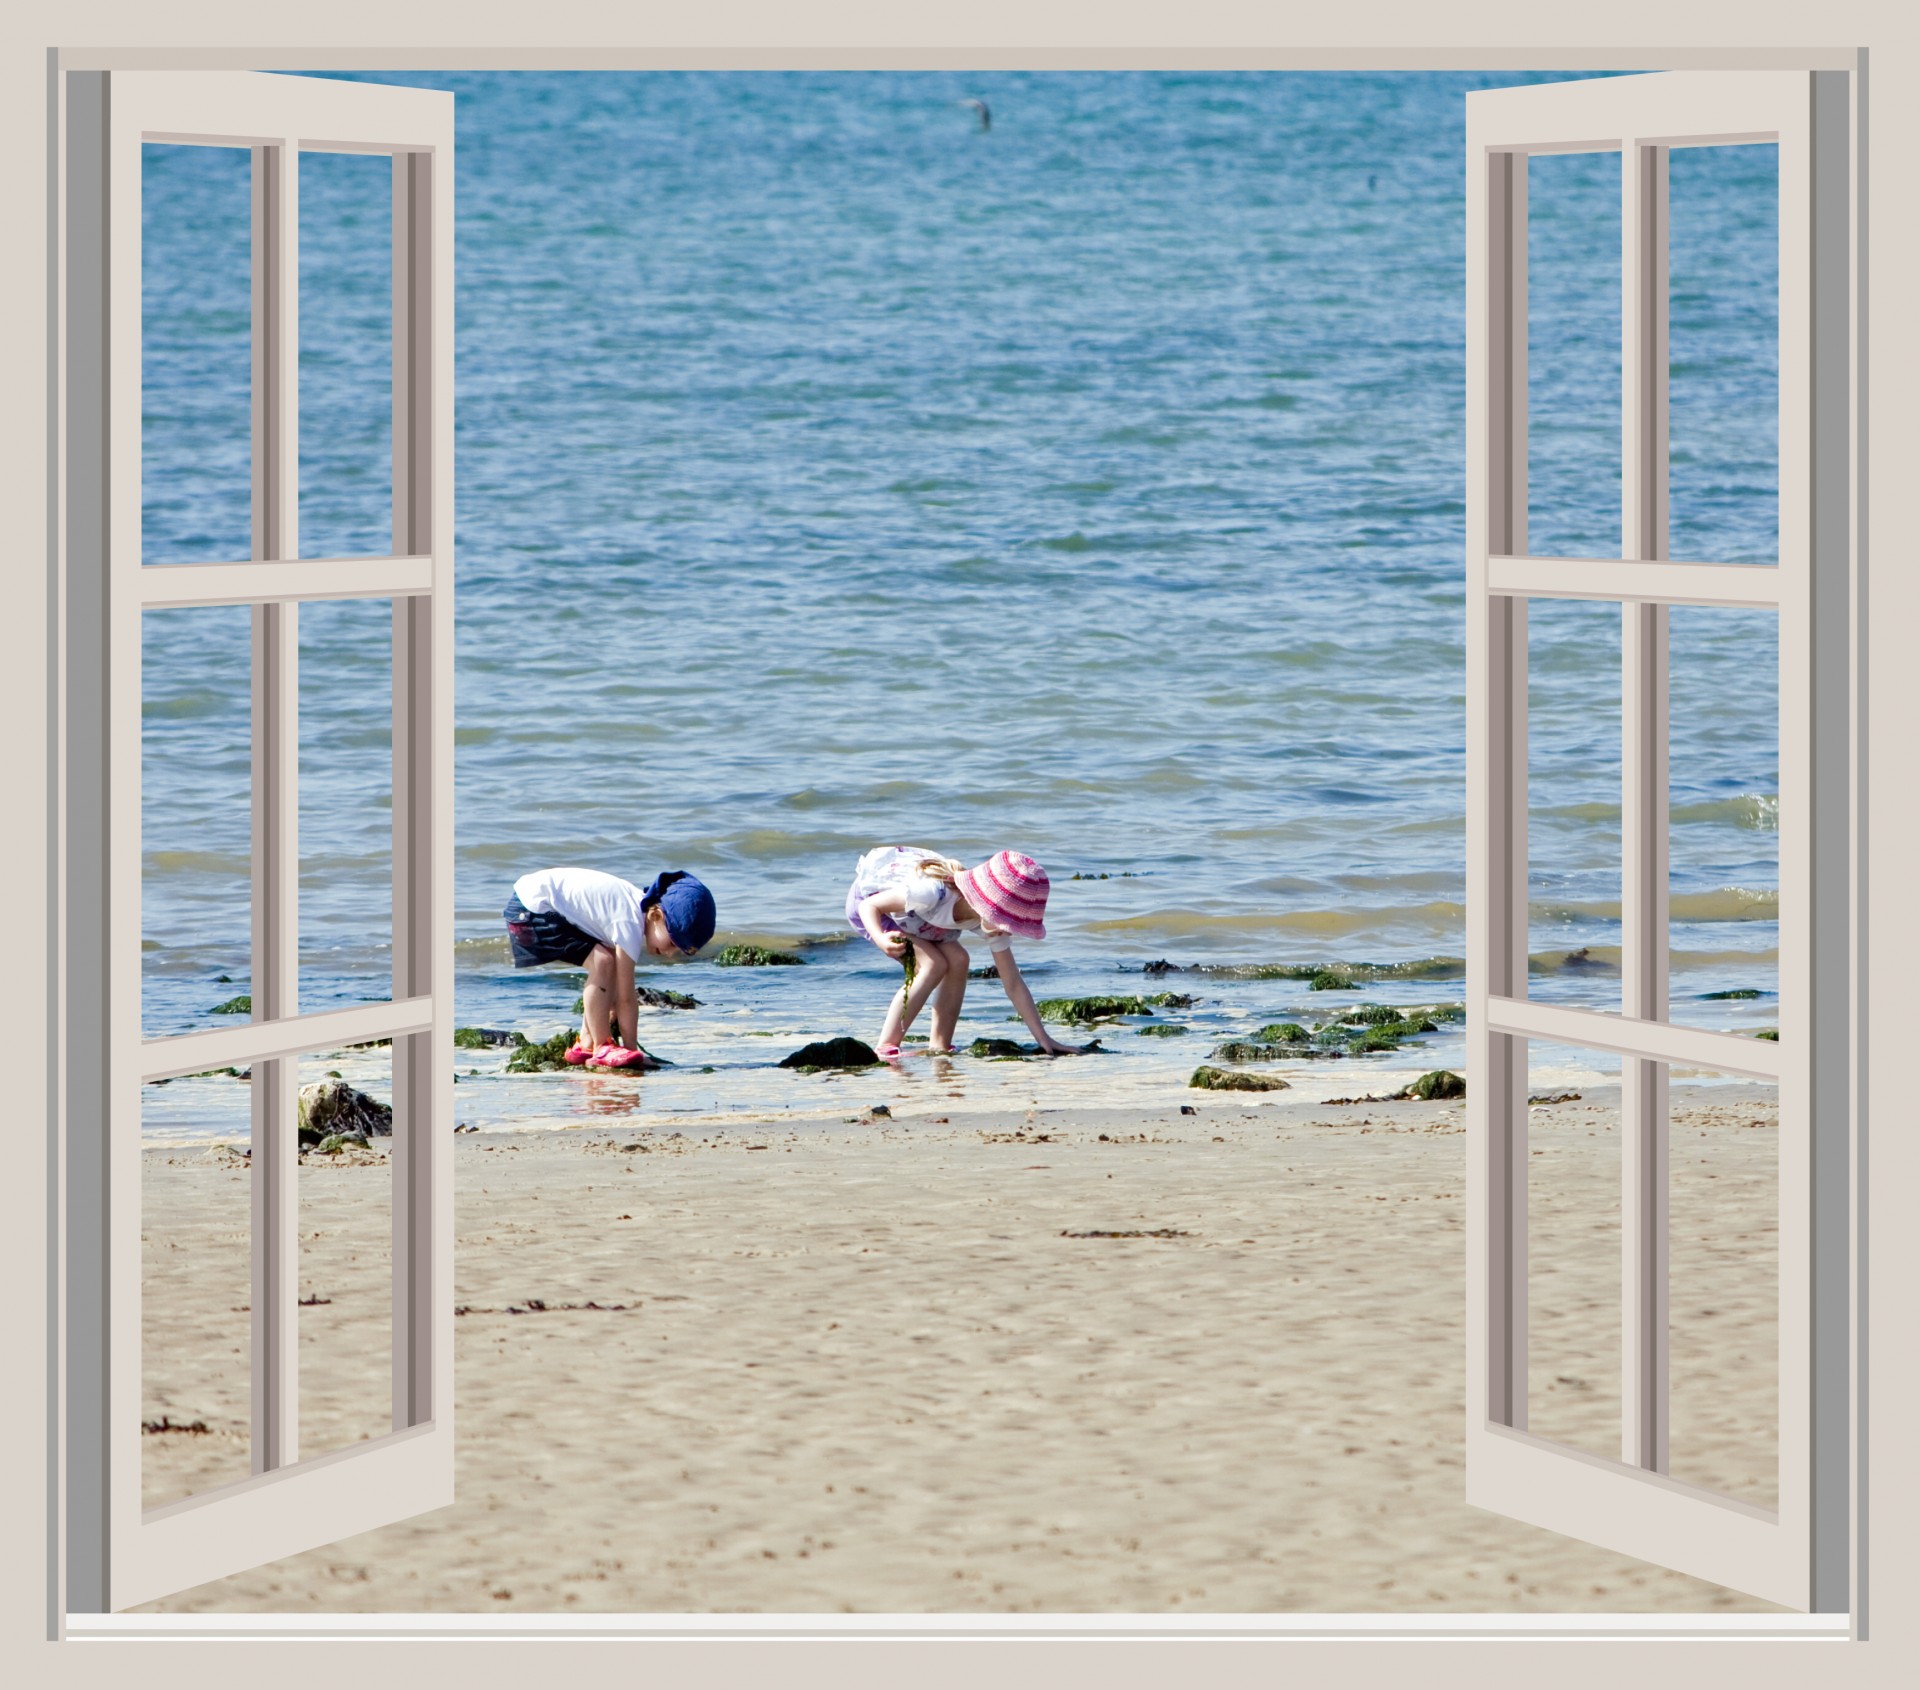 Children on the beach seen through an open window